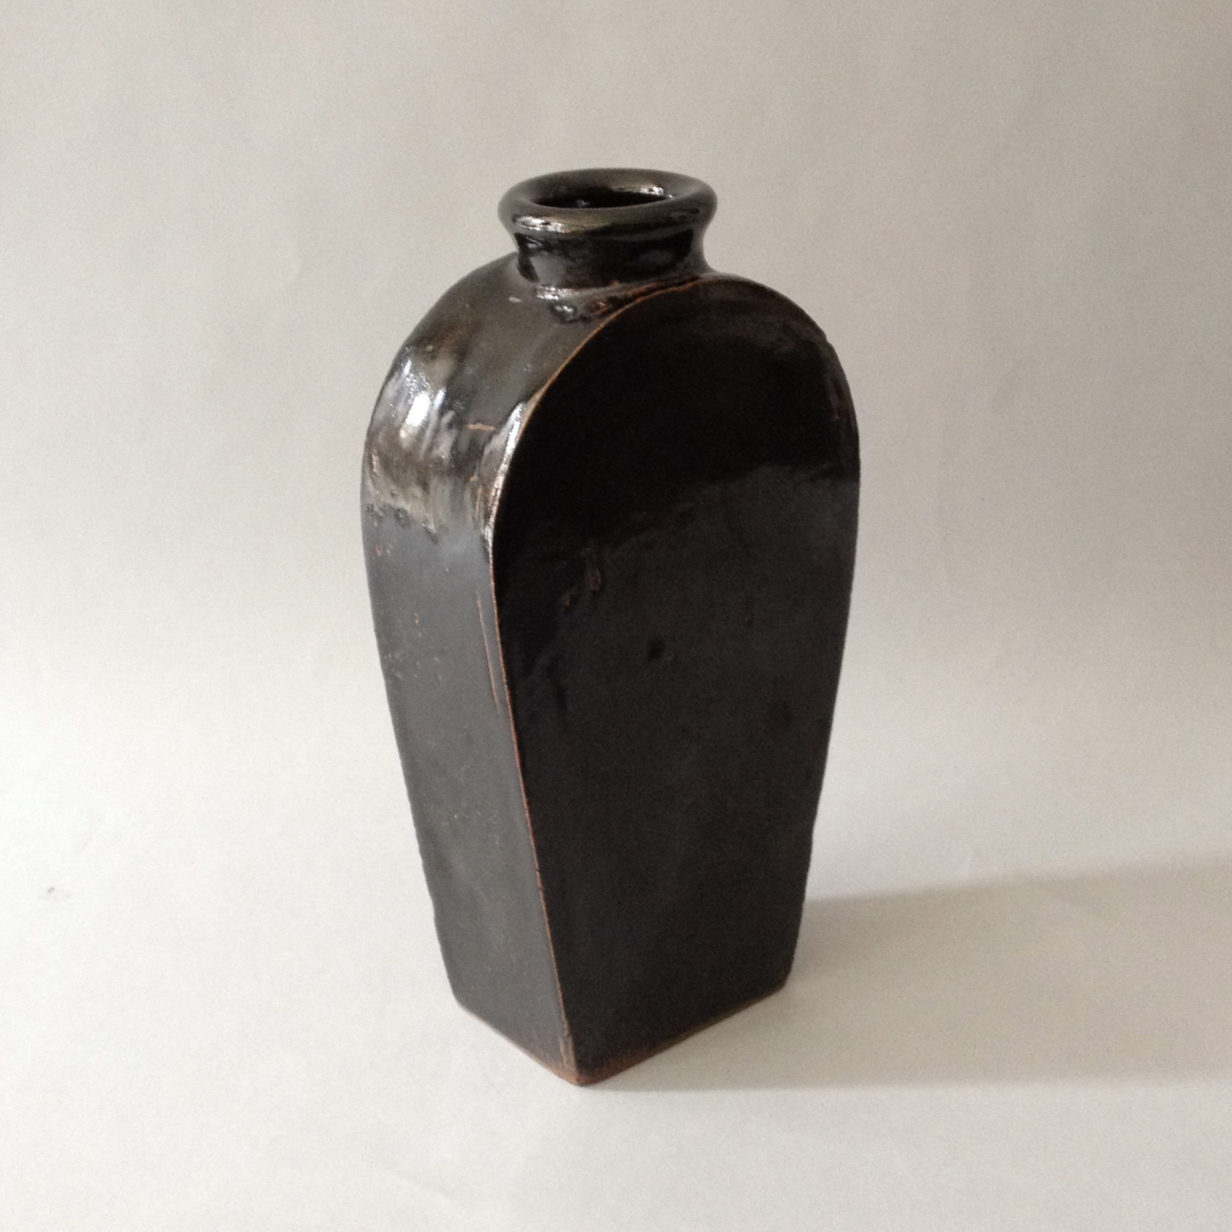 A Black Glazed Chinese Pottery Bottle